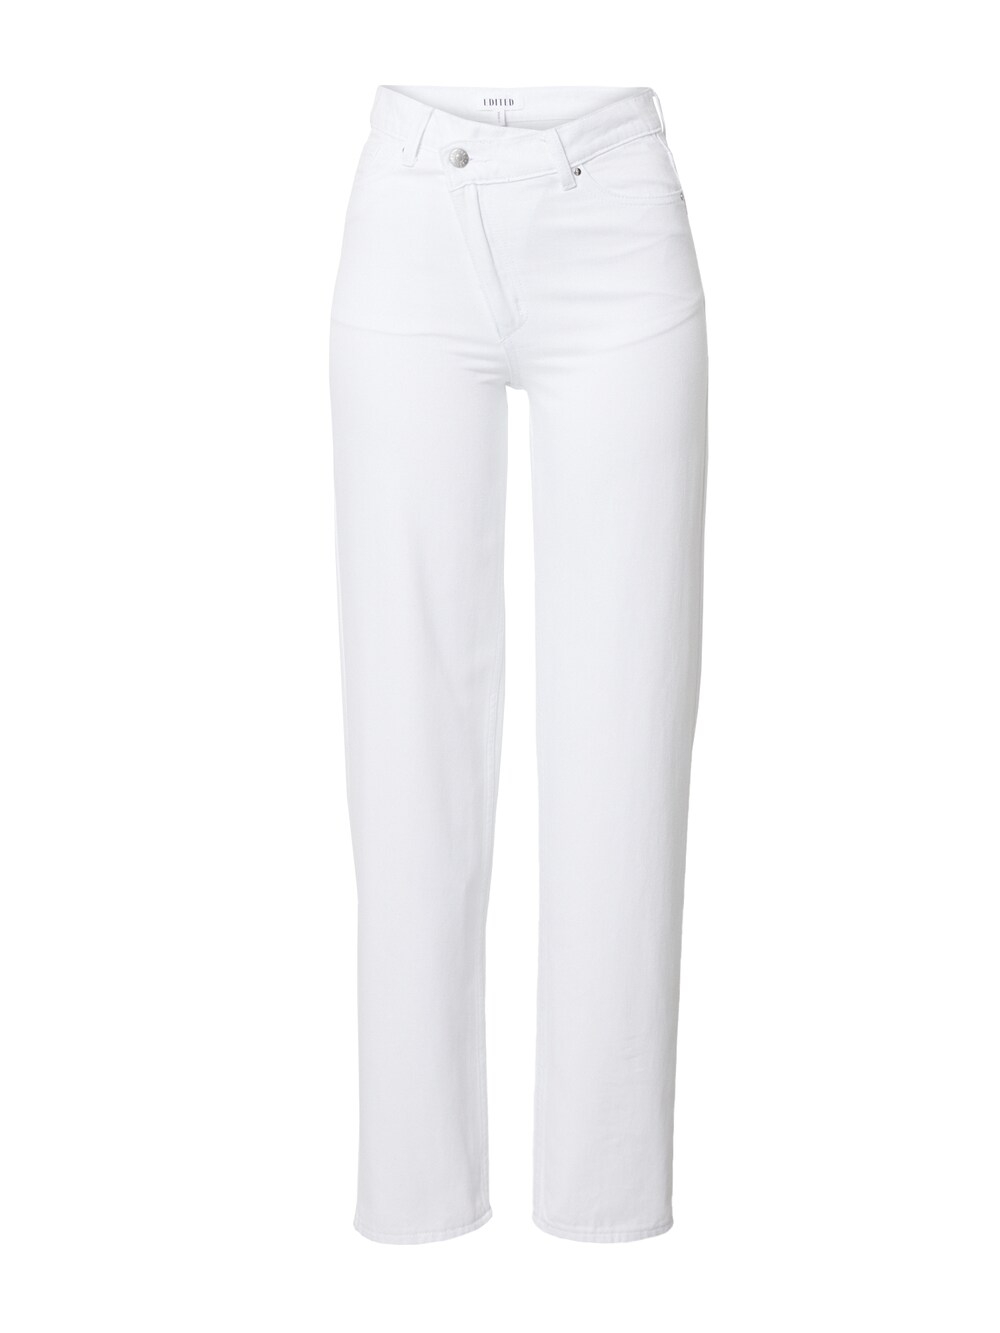 Обычные джинсы Edited Lina, белый